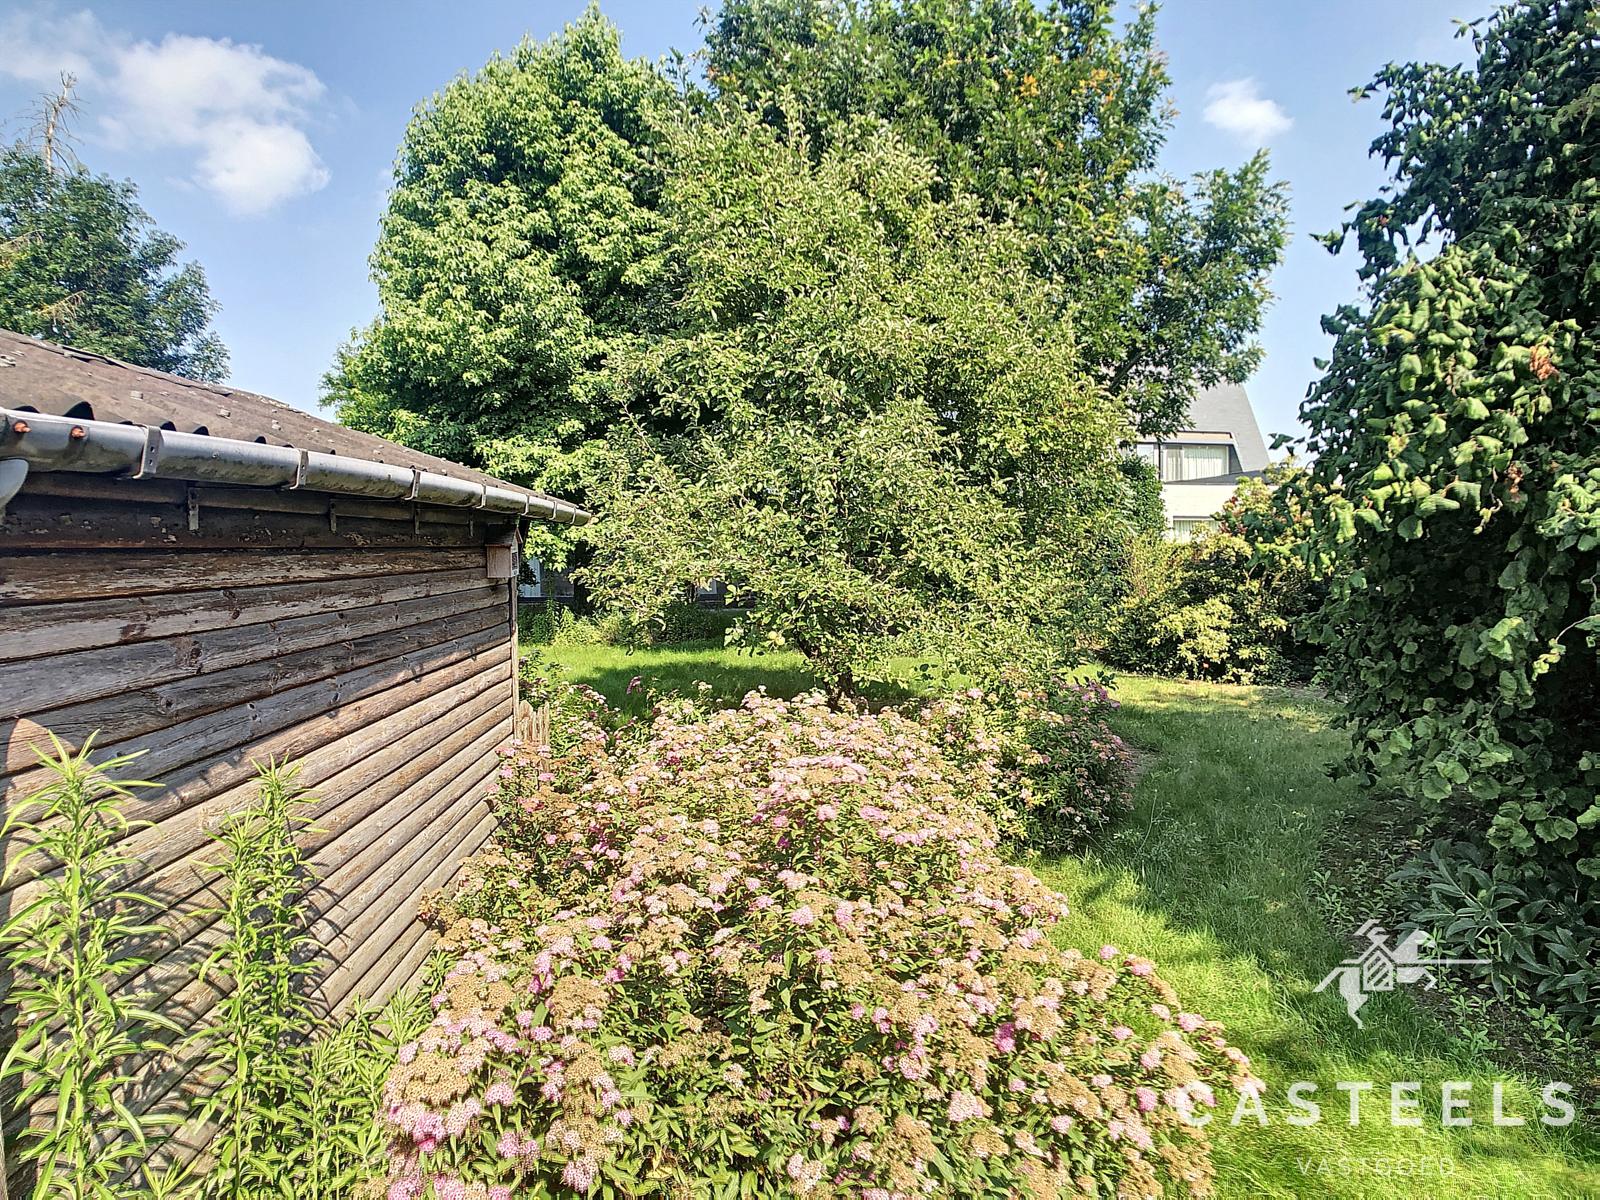 Afbeelding Charmante bungalow op een idyllische locatie omgeven door groen. - Casteels Vastgoed